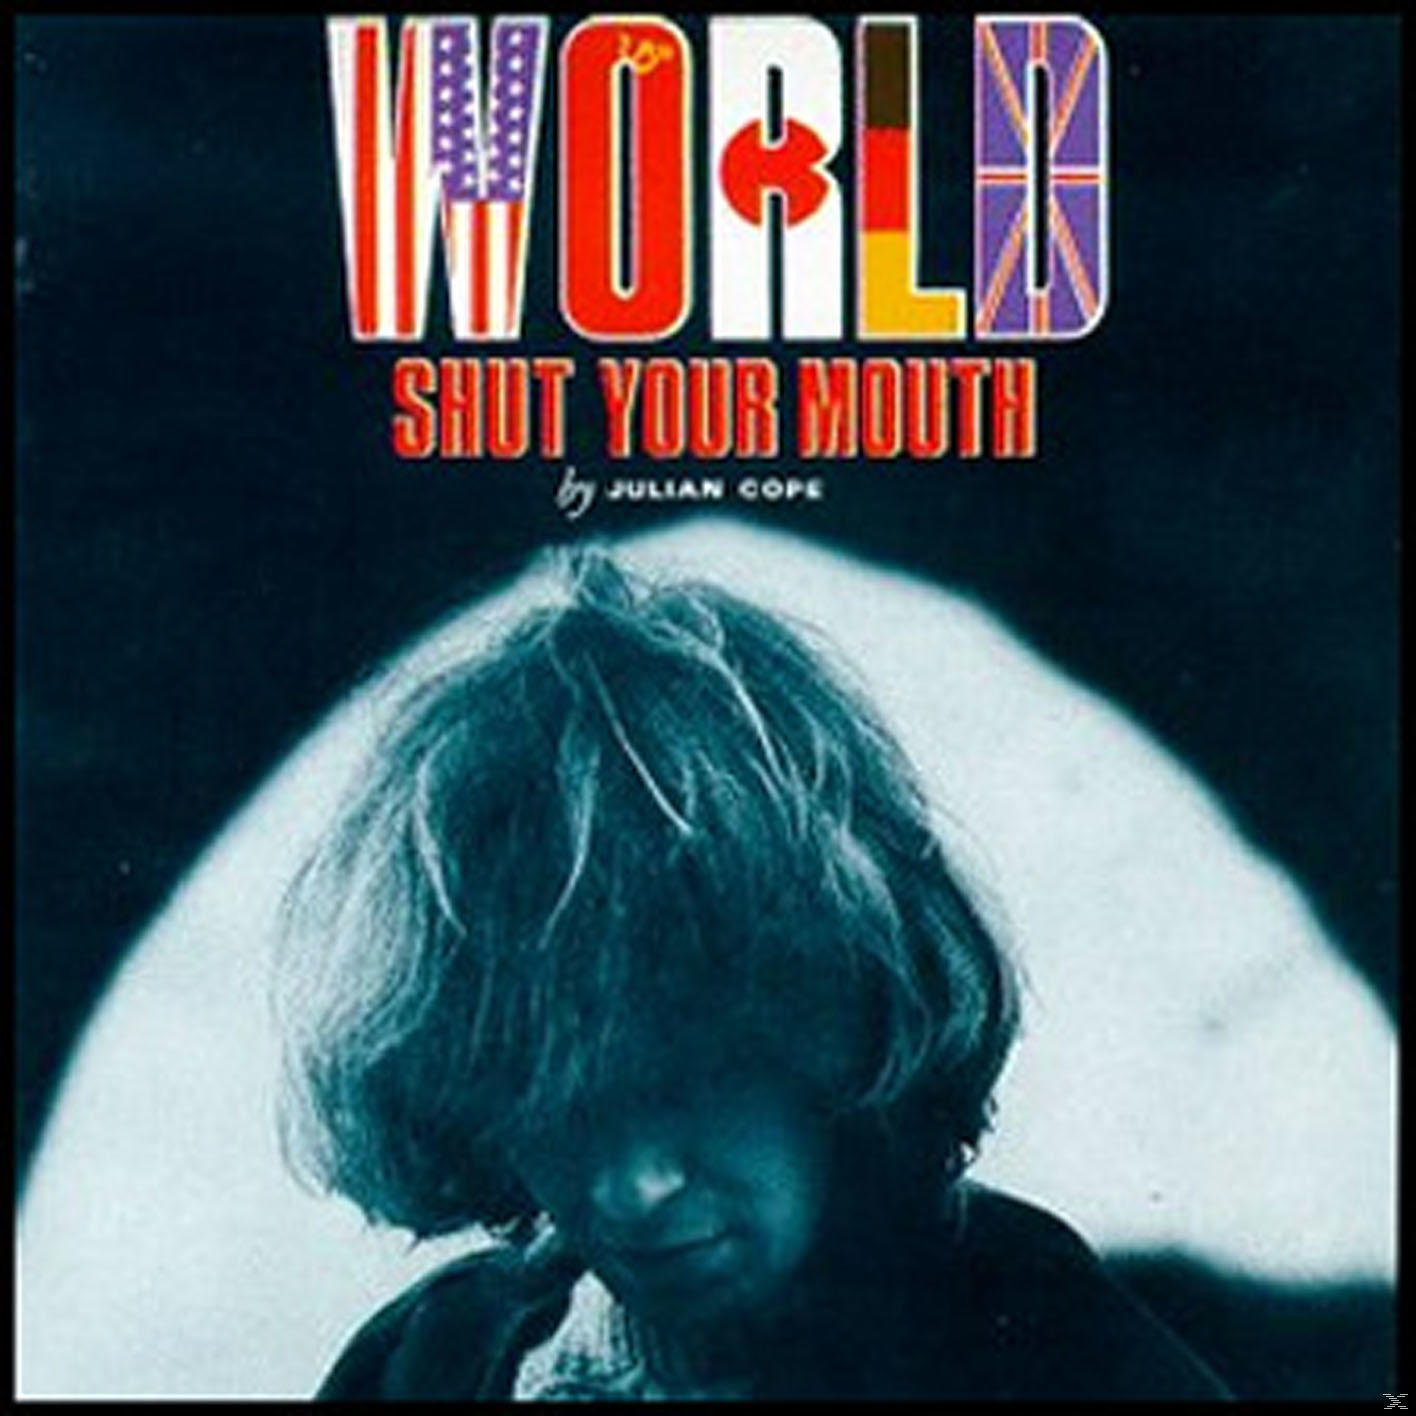 Julian Cope - World - Mouth (CD) Your Shut